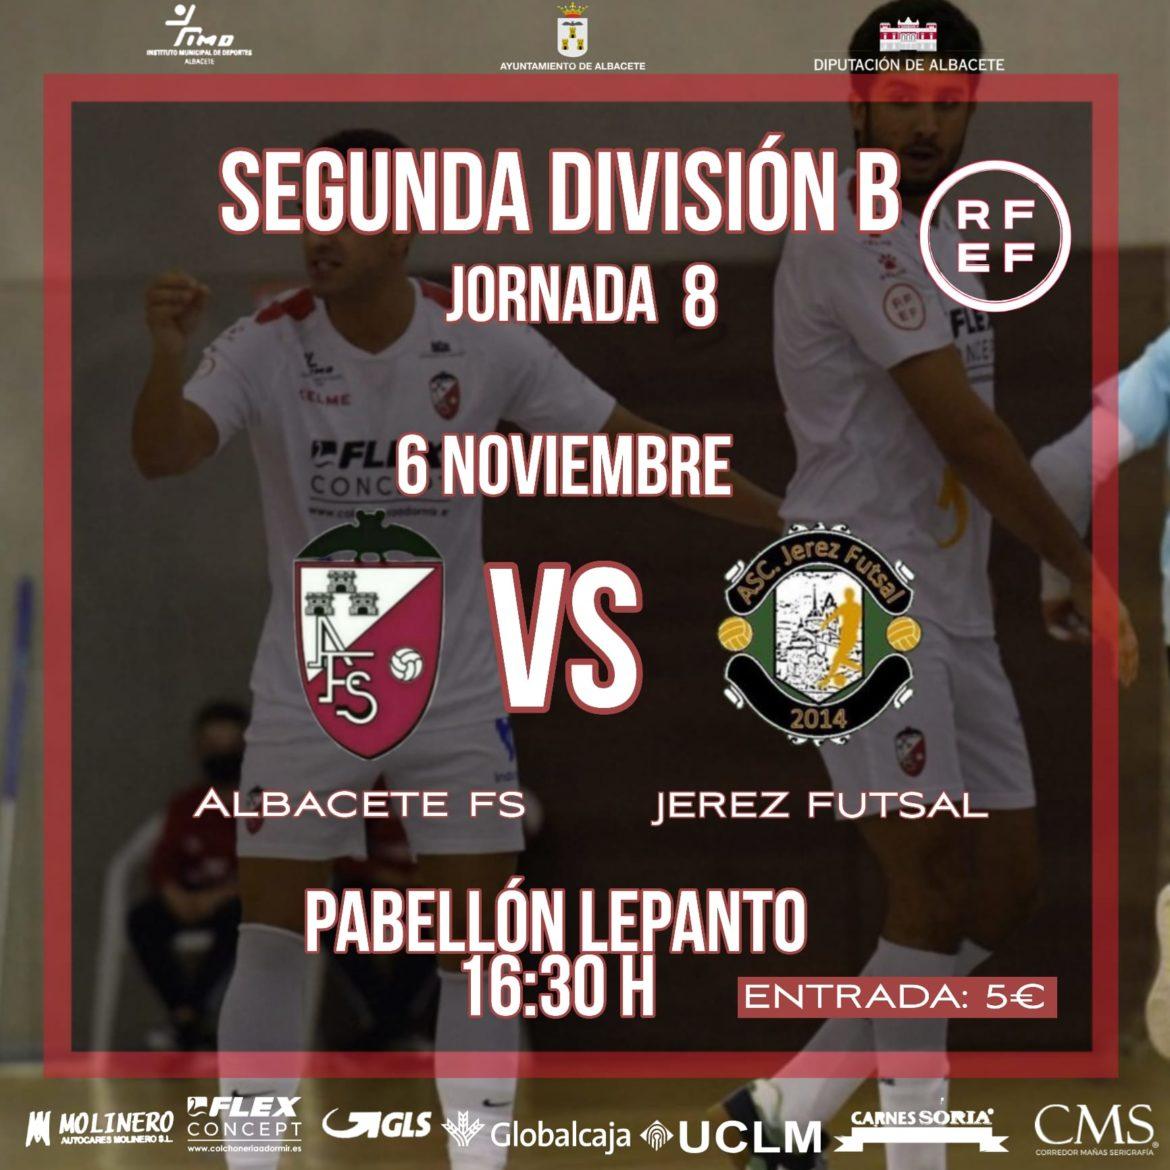 Previa | El Albacete FS recibe al Jerez Futsal en búsqueda de su primera victoria como local